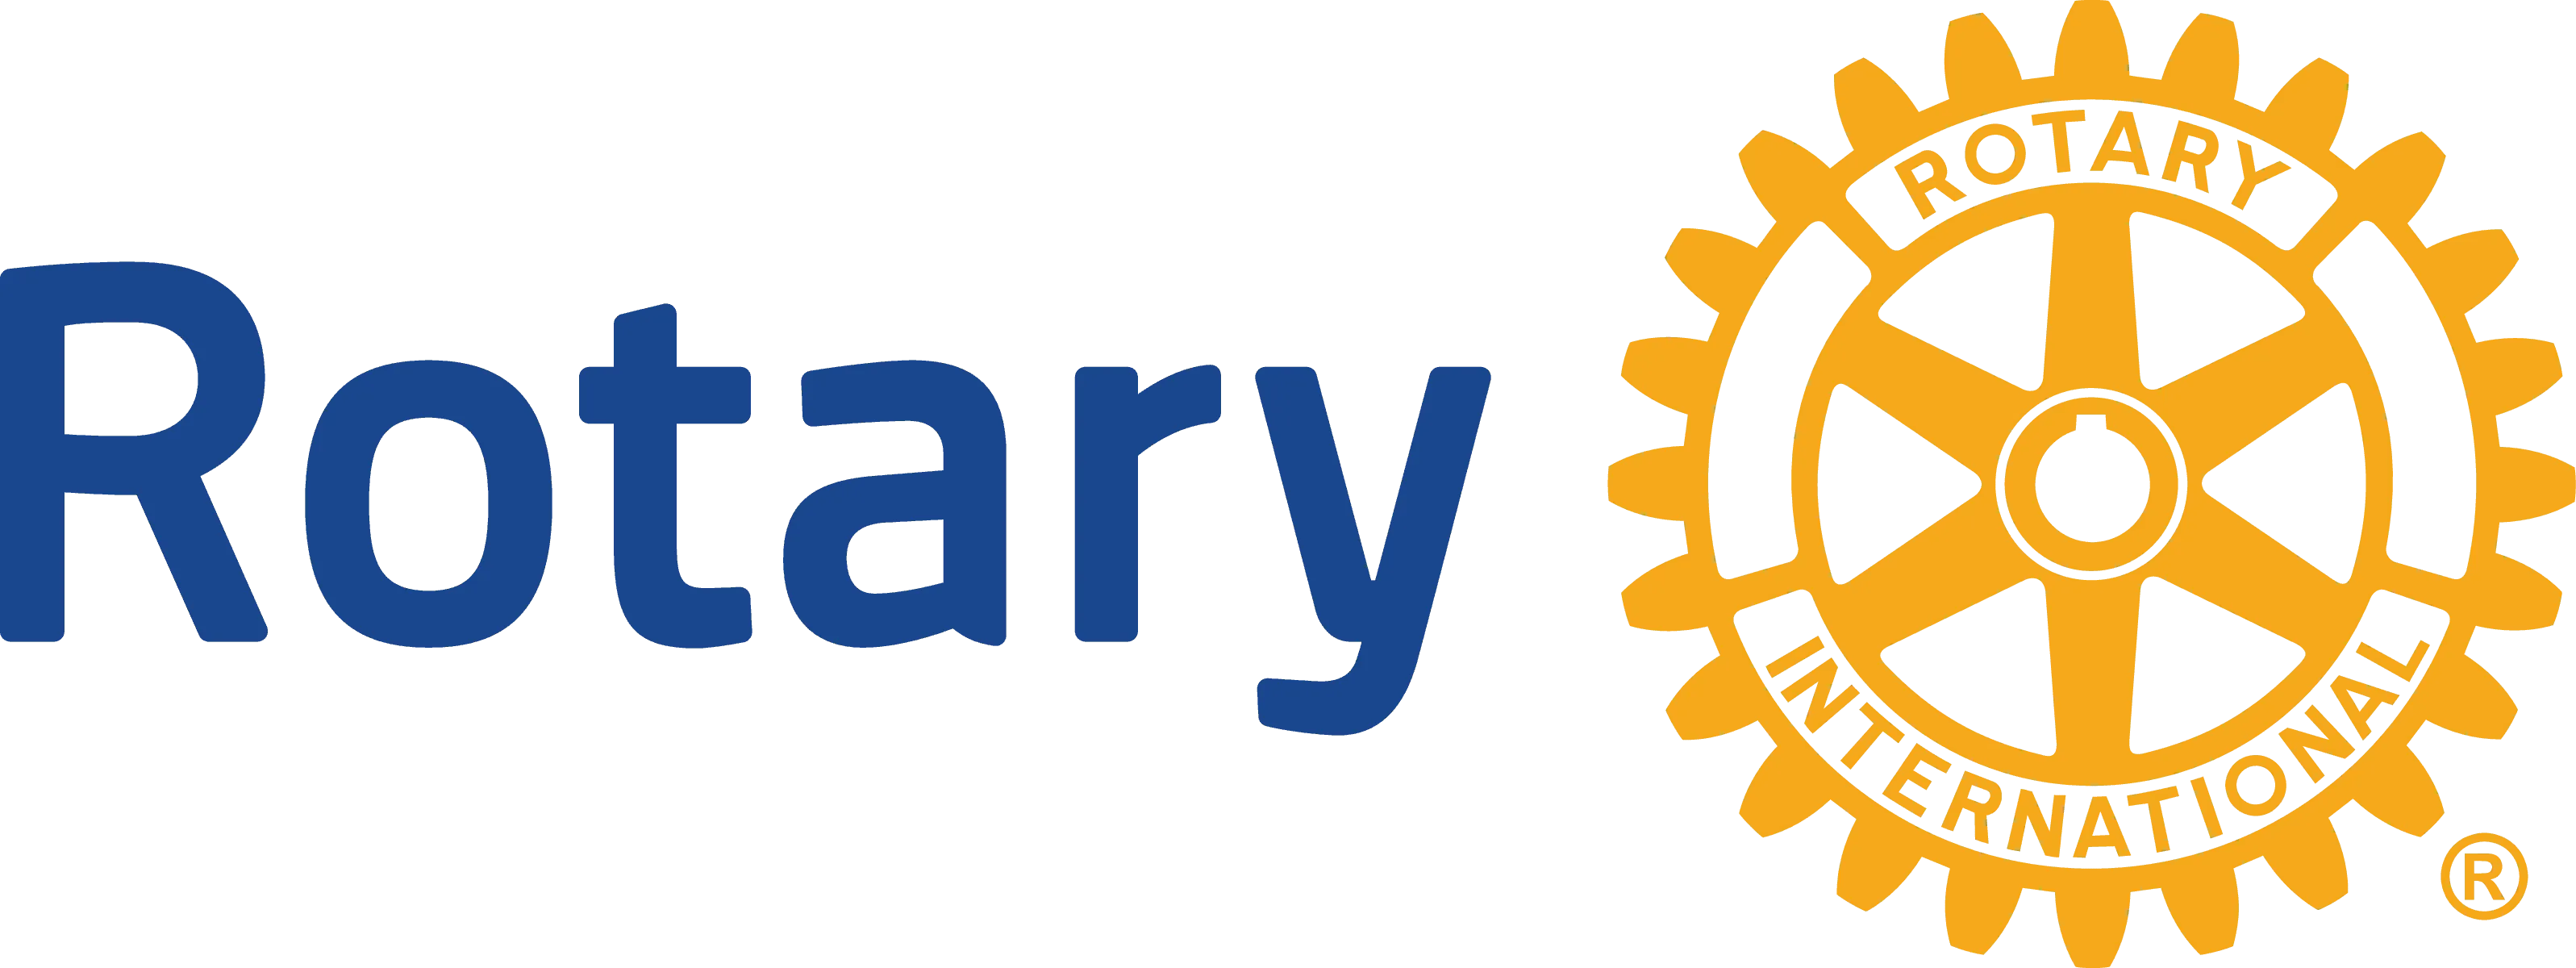 Rotary's logo